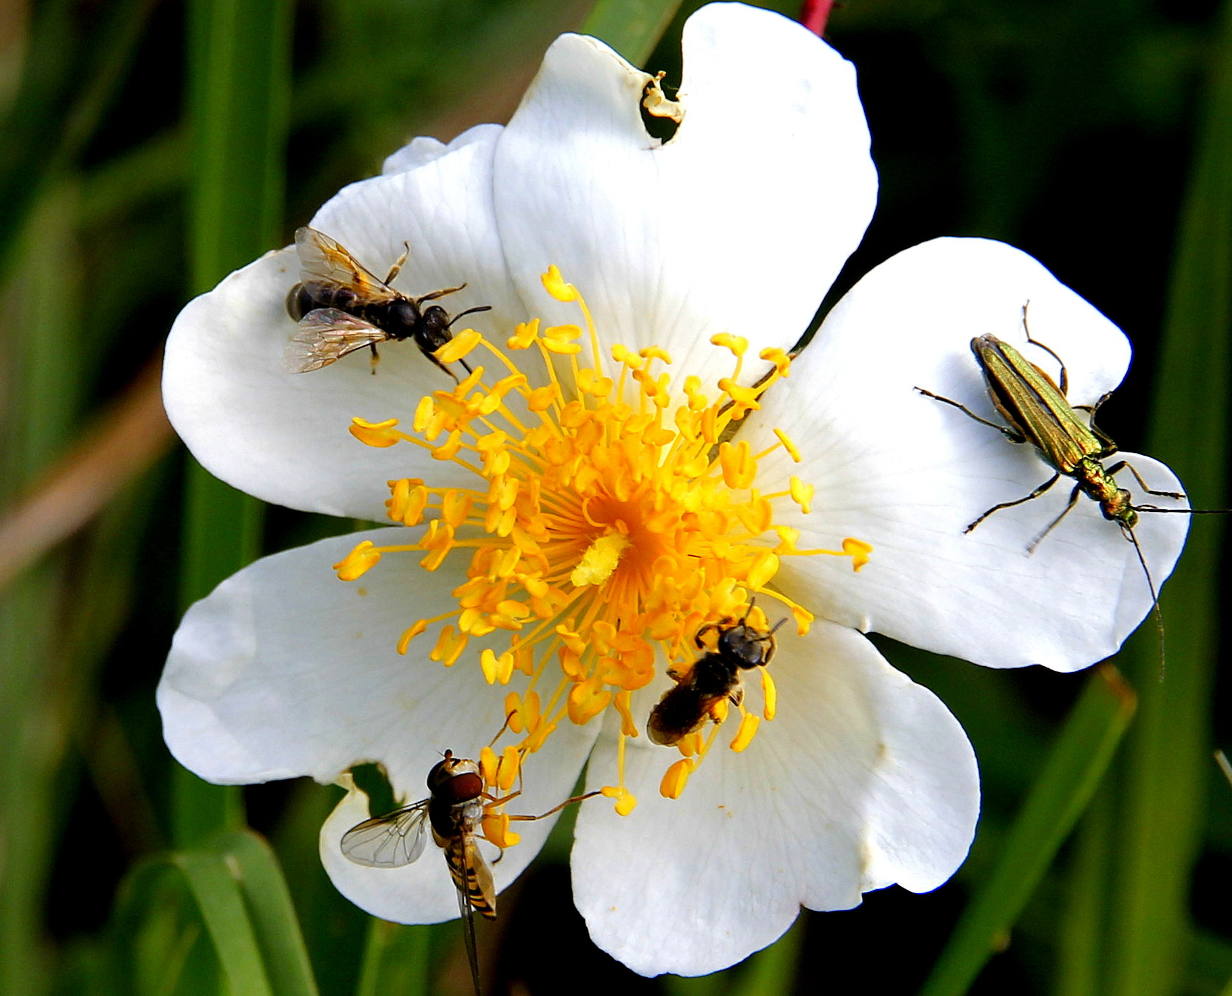 Maison de la Corniche basque : abeilles, pollinisateurs et pesticides